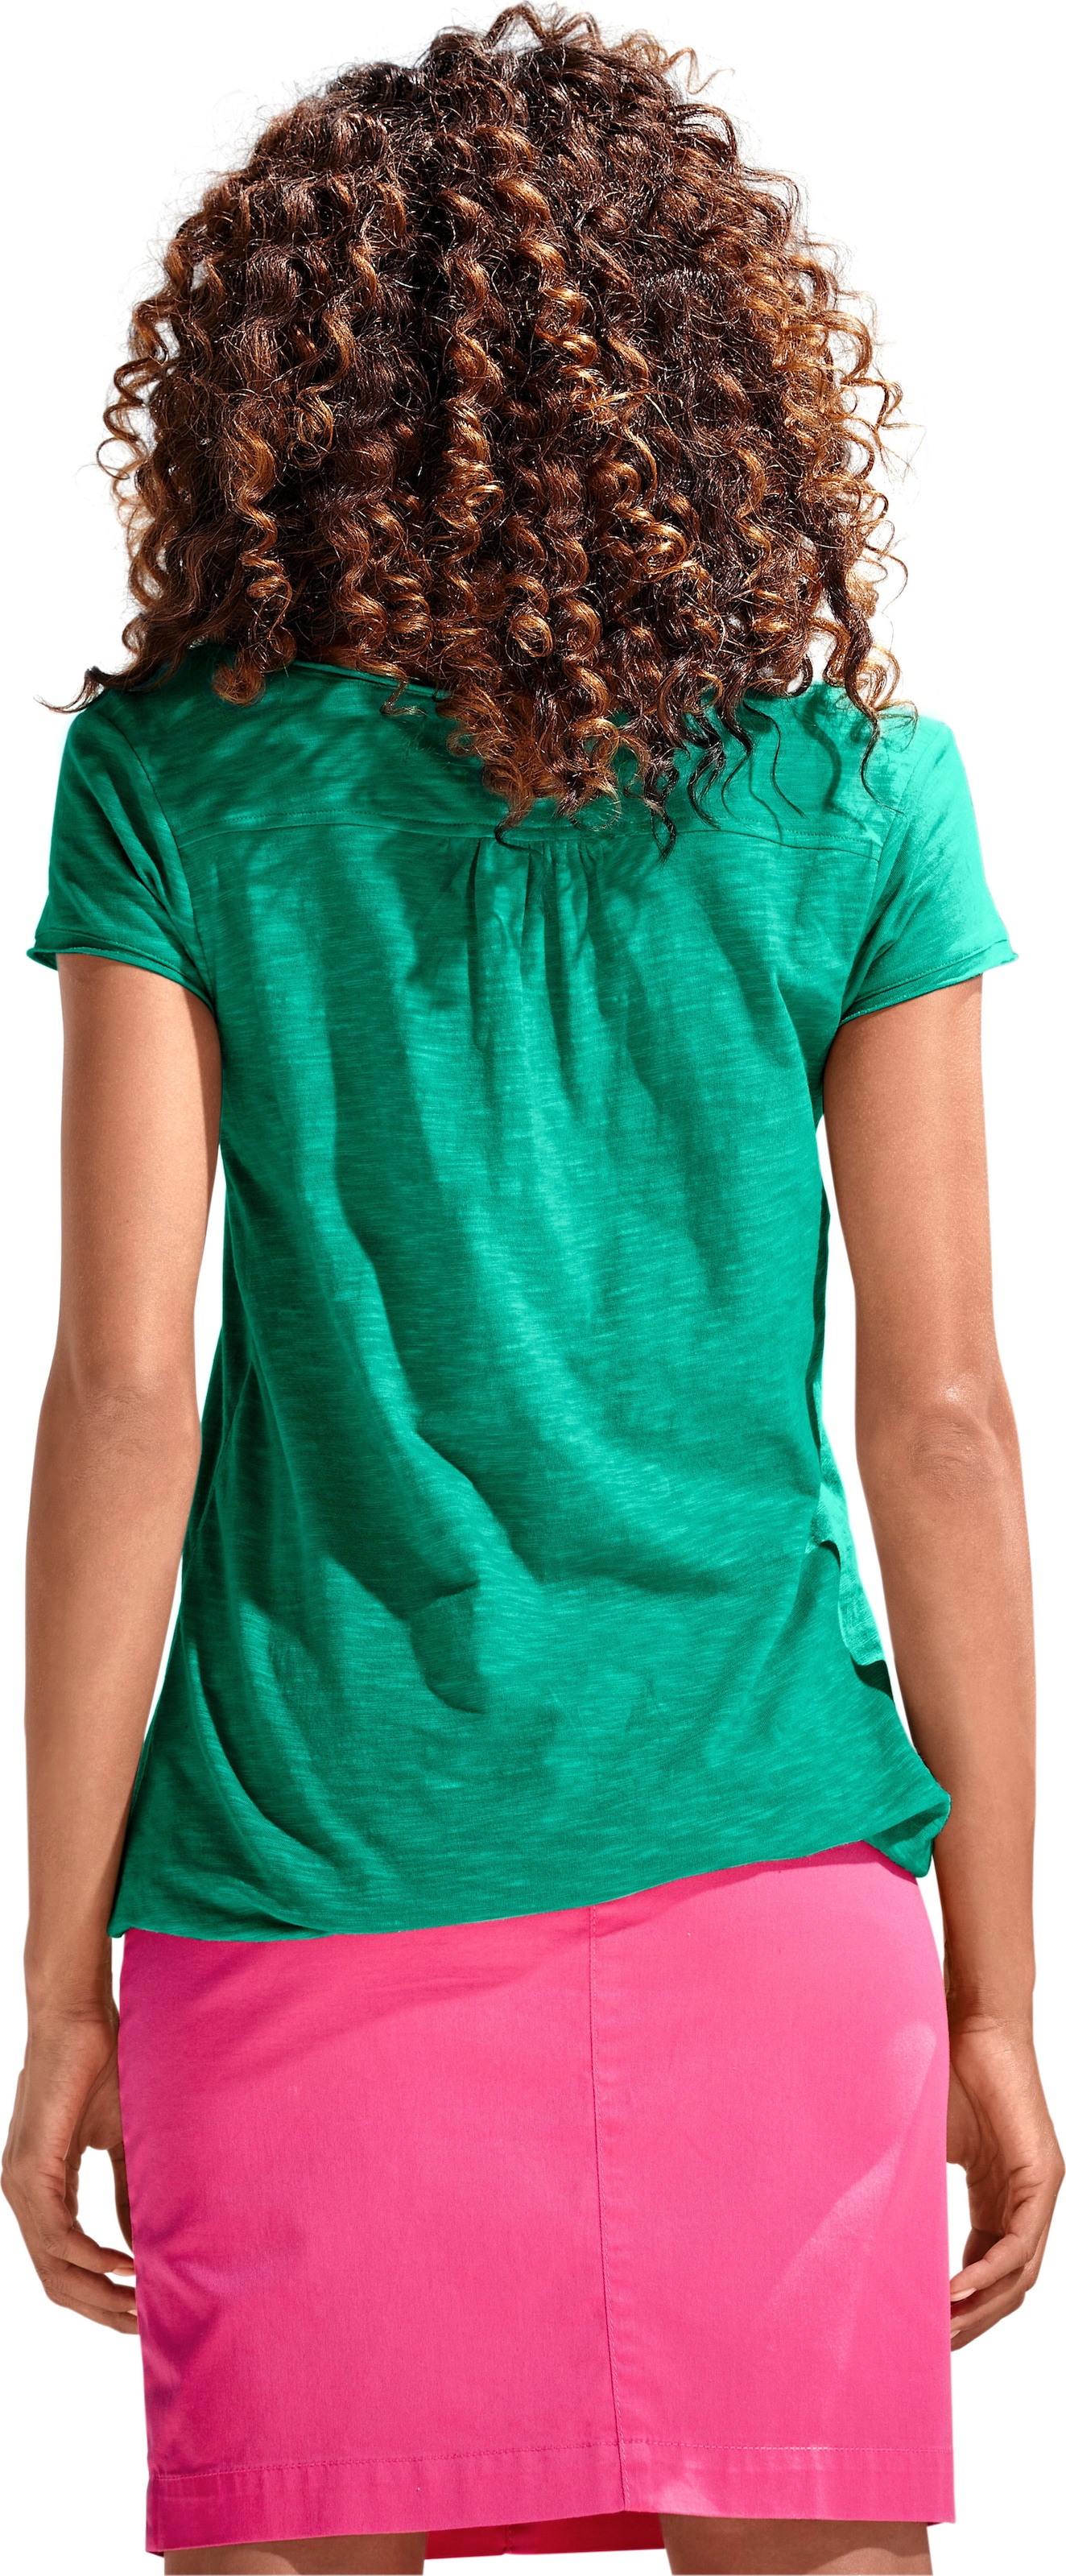 und modern günstig Kaufen-Rundhals-Shirt in grün von heine. Rundhals-Shirt in grün von heine <![CDATA[Rundhals-Shirt Moderne Form mit Gummizugbund. Mit Spitzen-Details und schimmernden Knöpfen. Leichte Shirtware mit Flammé-Effekt.]]>. 